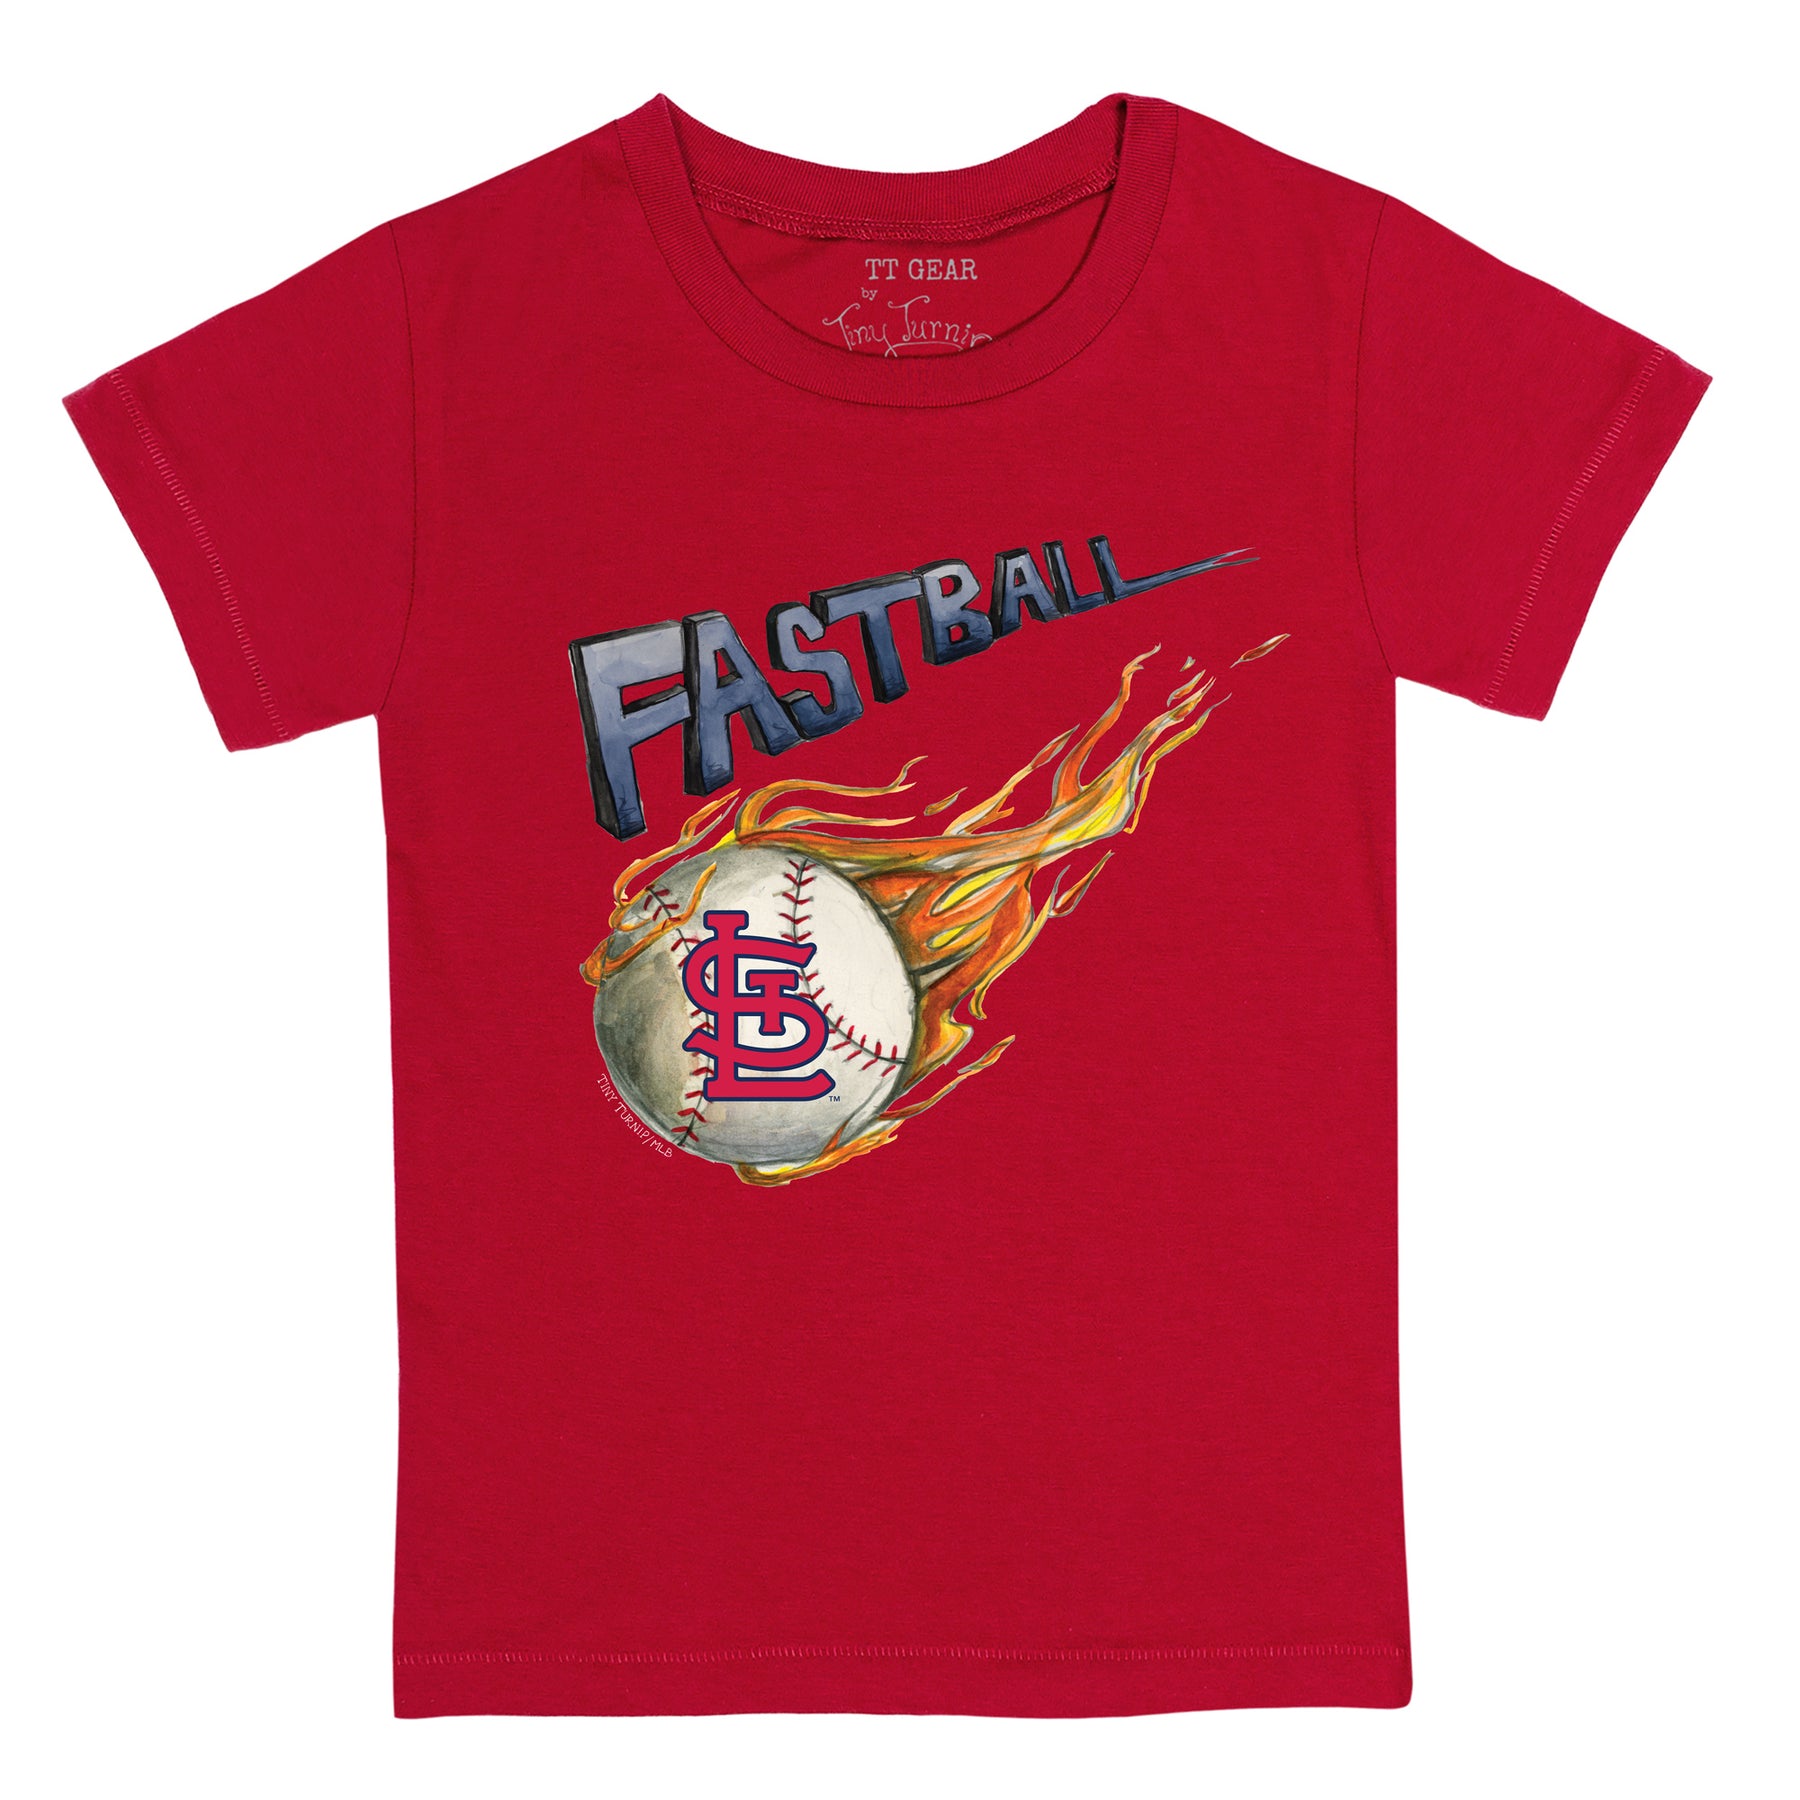 St. Louis Cardinals Fastball Tee Shirt